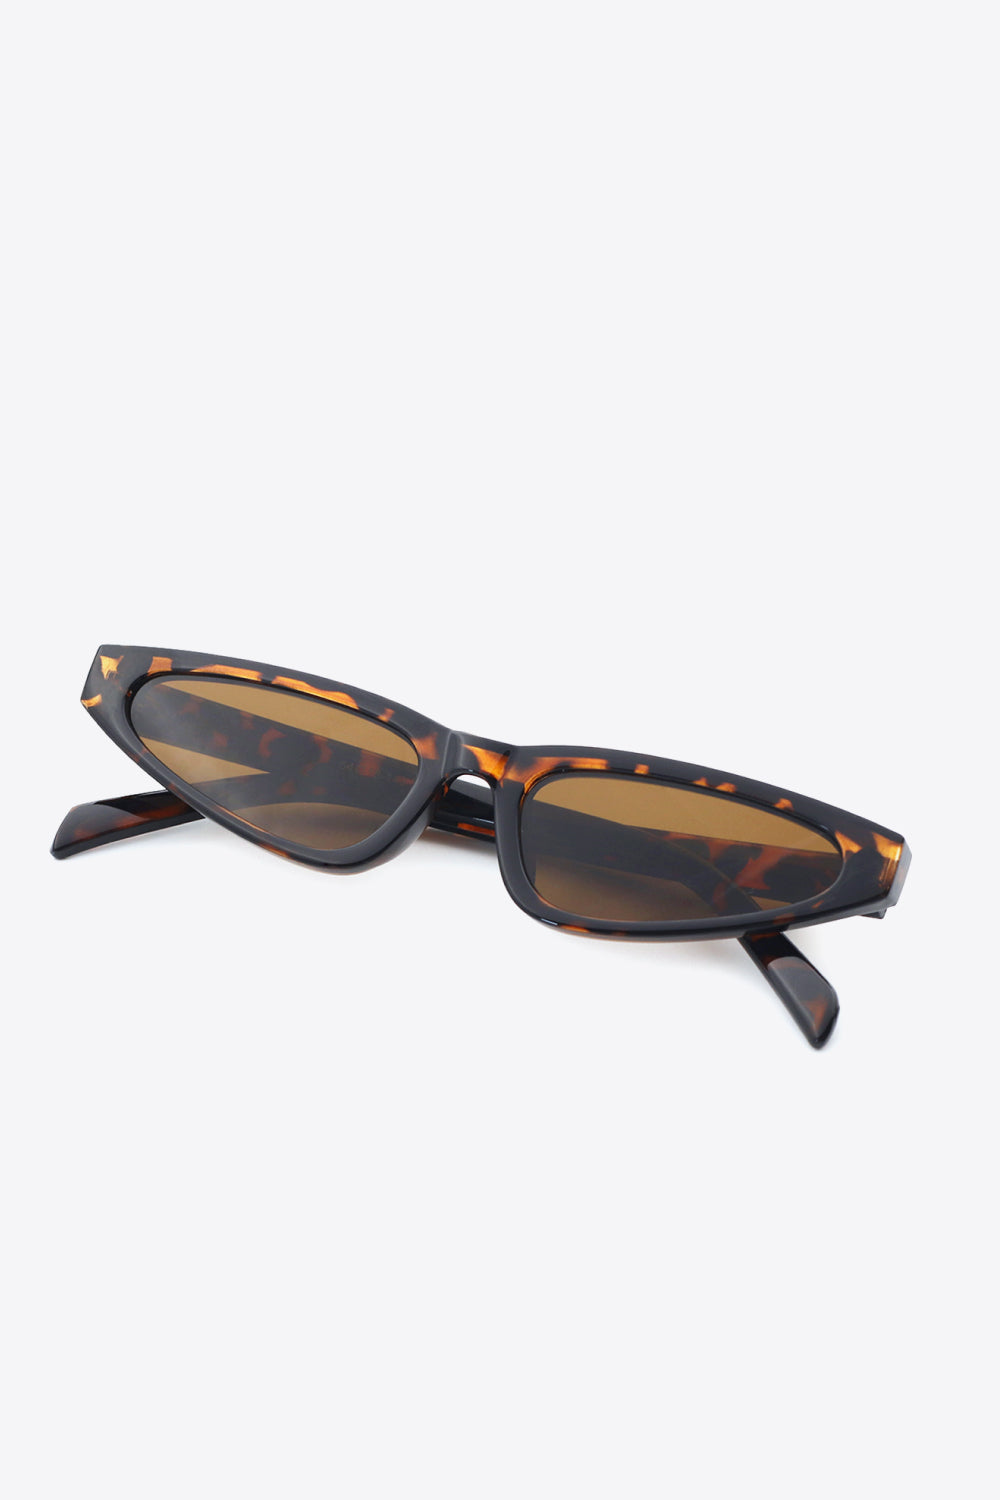 Gafas de sol tipo ojo de gato UV400 con montura de policarbonato